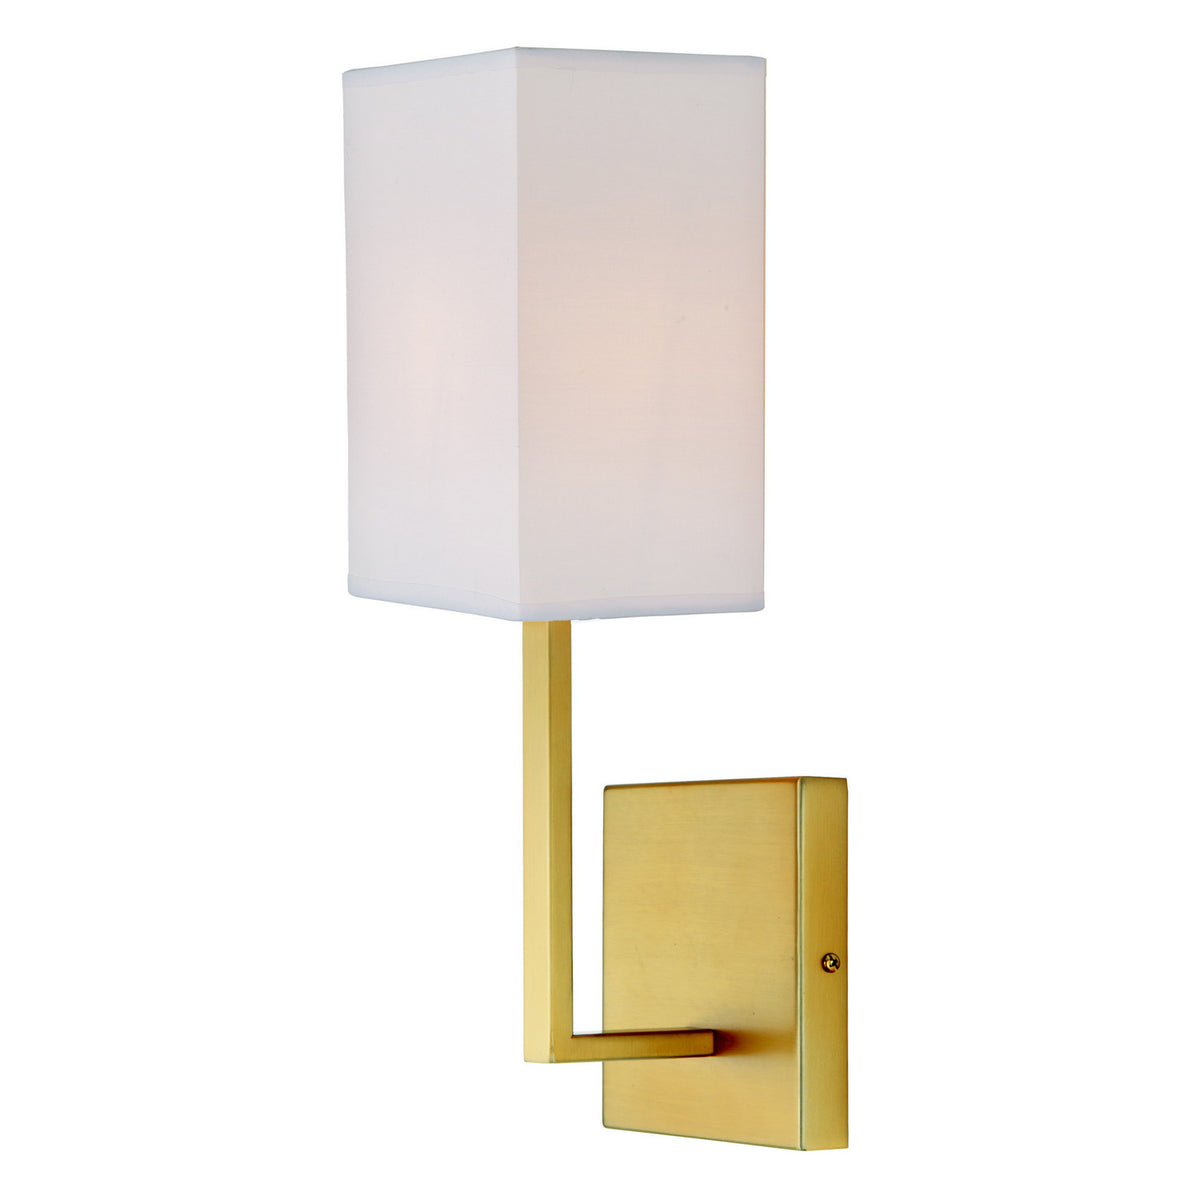 JVI Designs - 540-10 - One Light Wall Sconce - Lisbon - Satin Brass